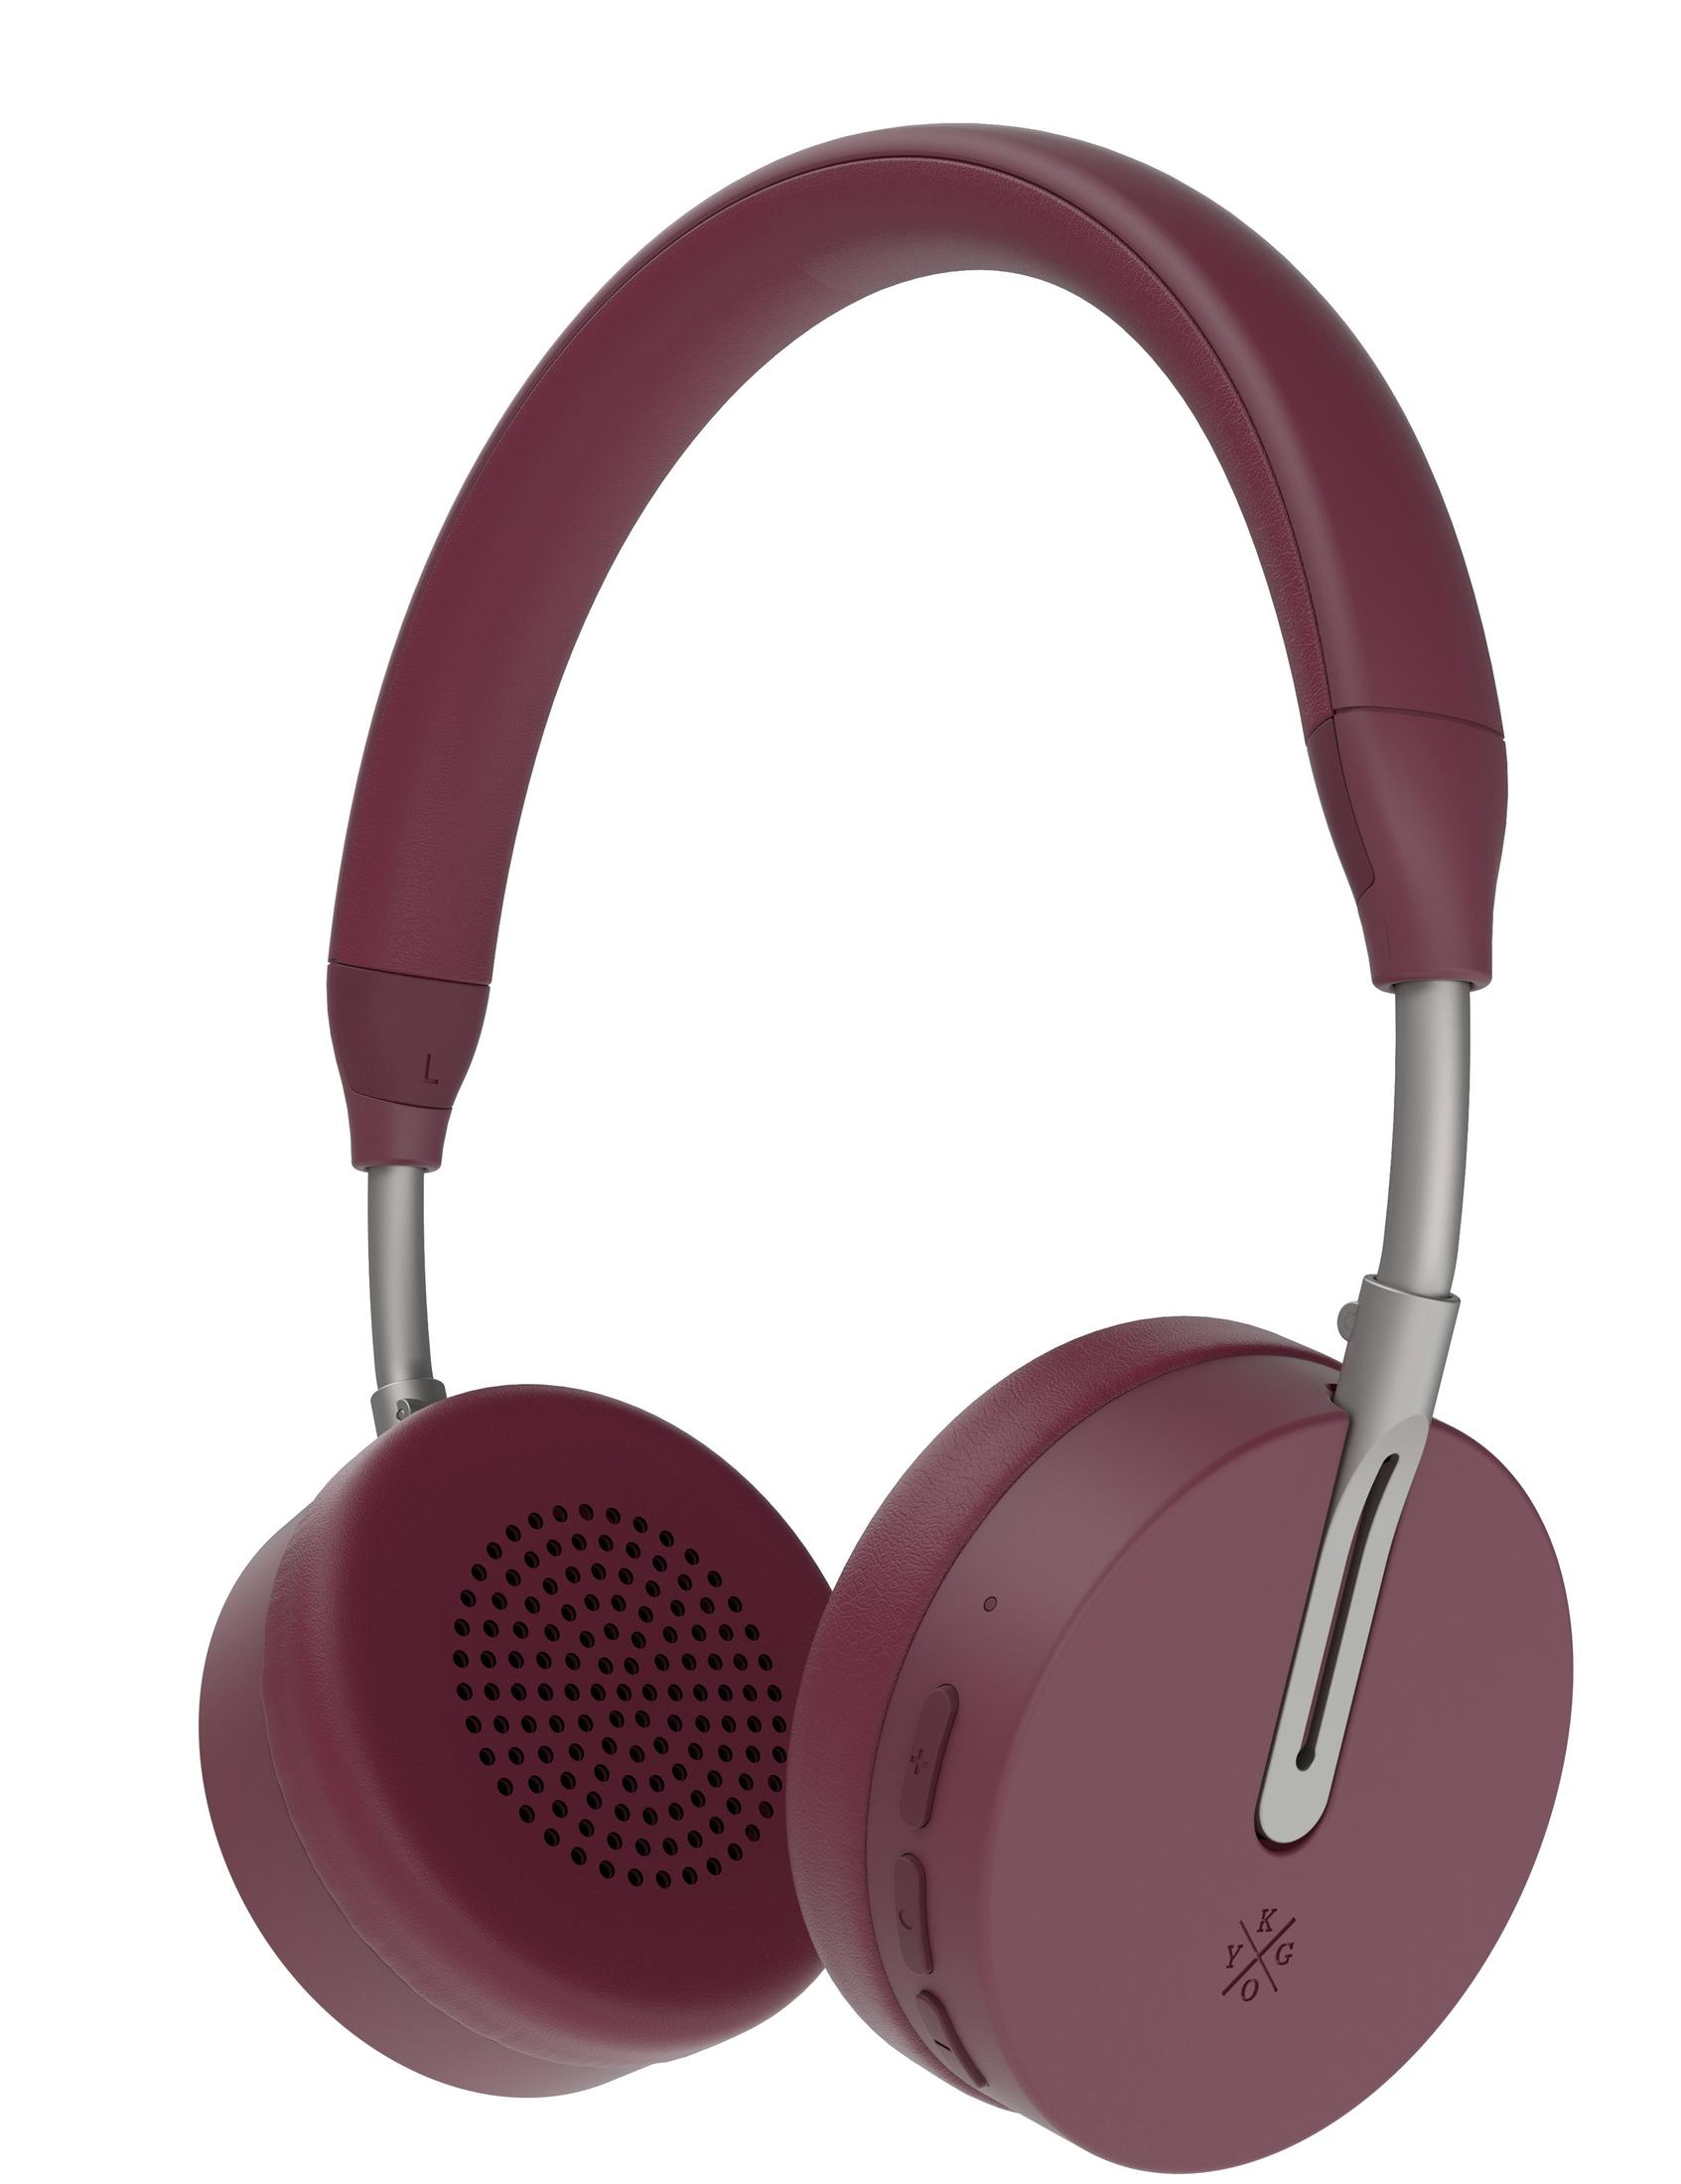 KYGO A6/500 Bluetooth BT, On-ear Kopfhörer Burgundy